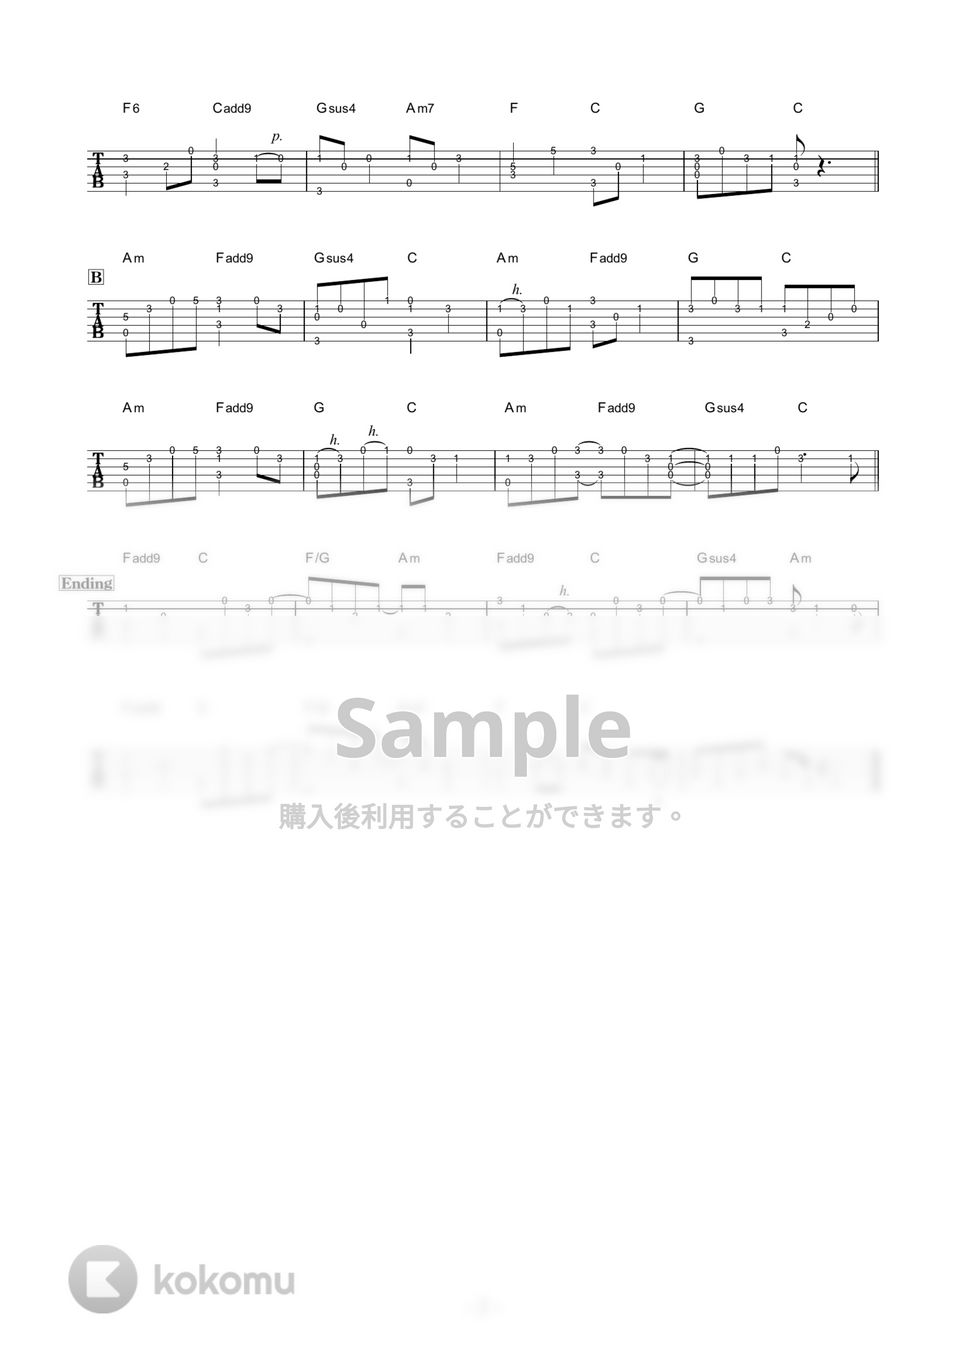 ヨルシカ - ただ君に晴れ (かんたんソロギター) by 伴奏屋TAB譜